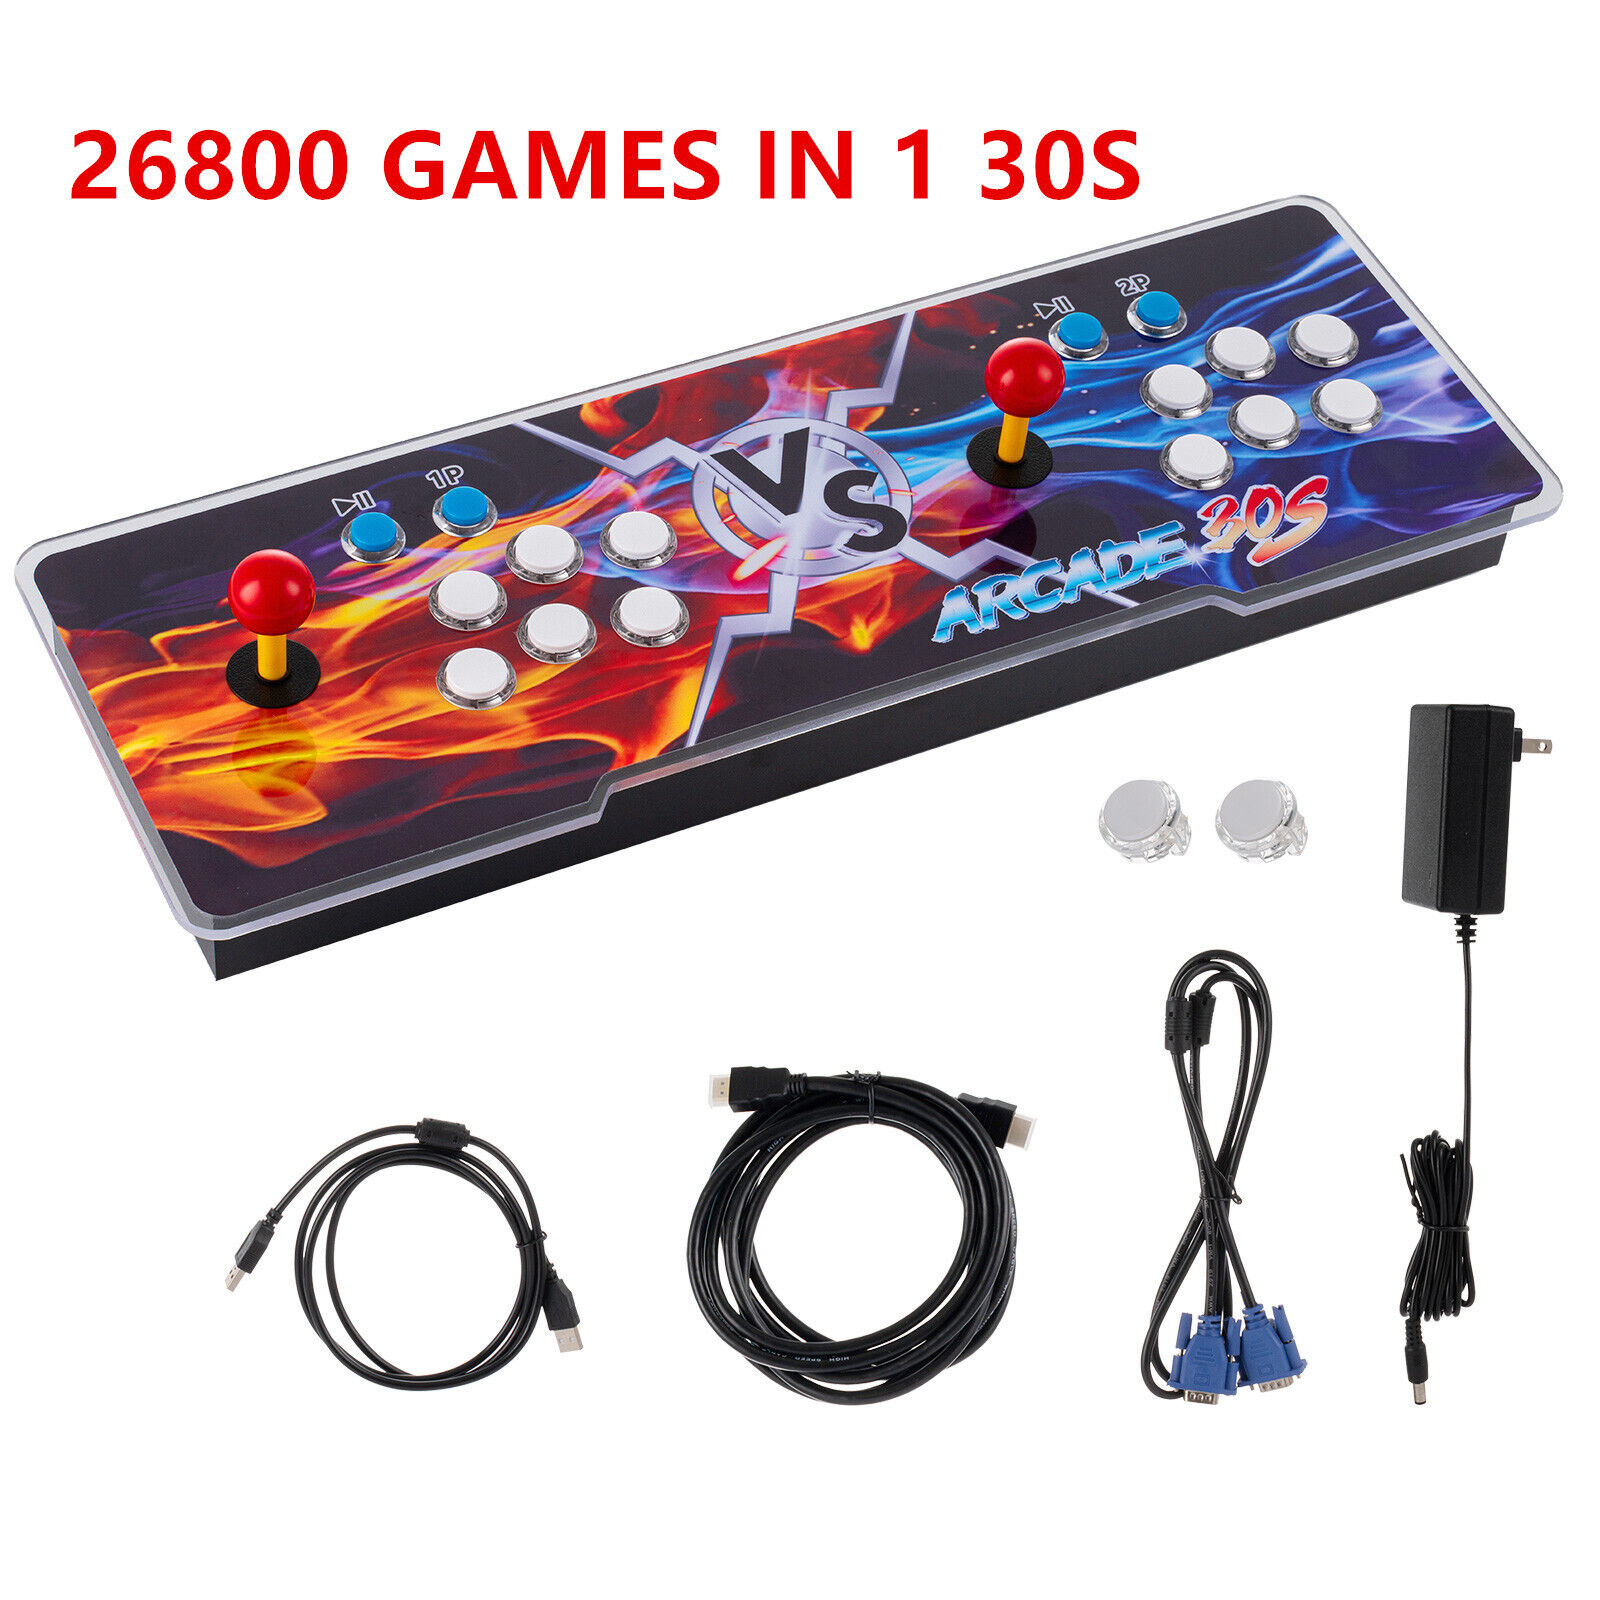 Pandora Box 30s 26800 in 1 Retro Video Games Double Stick Arcade Console